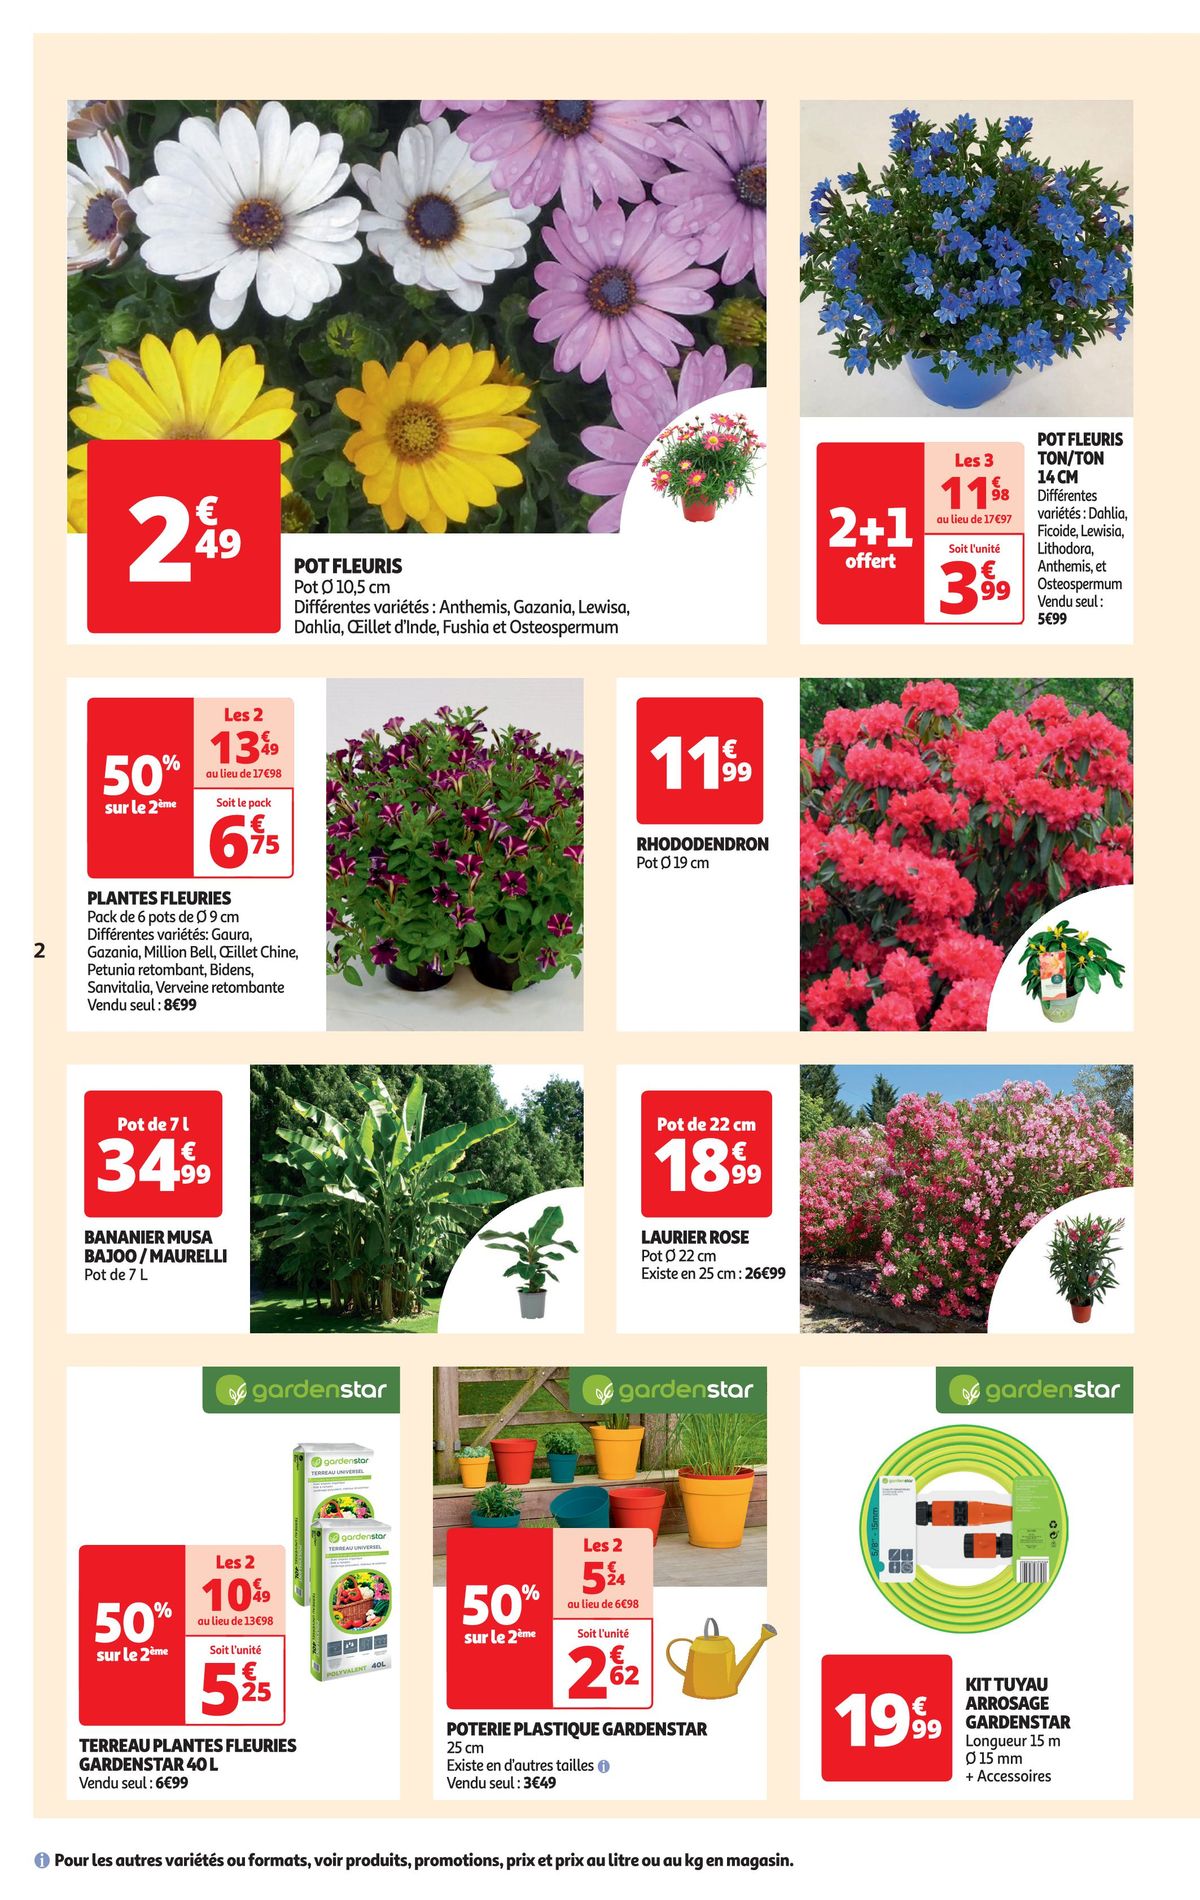 Catalogue Spécial floralies, page 00002